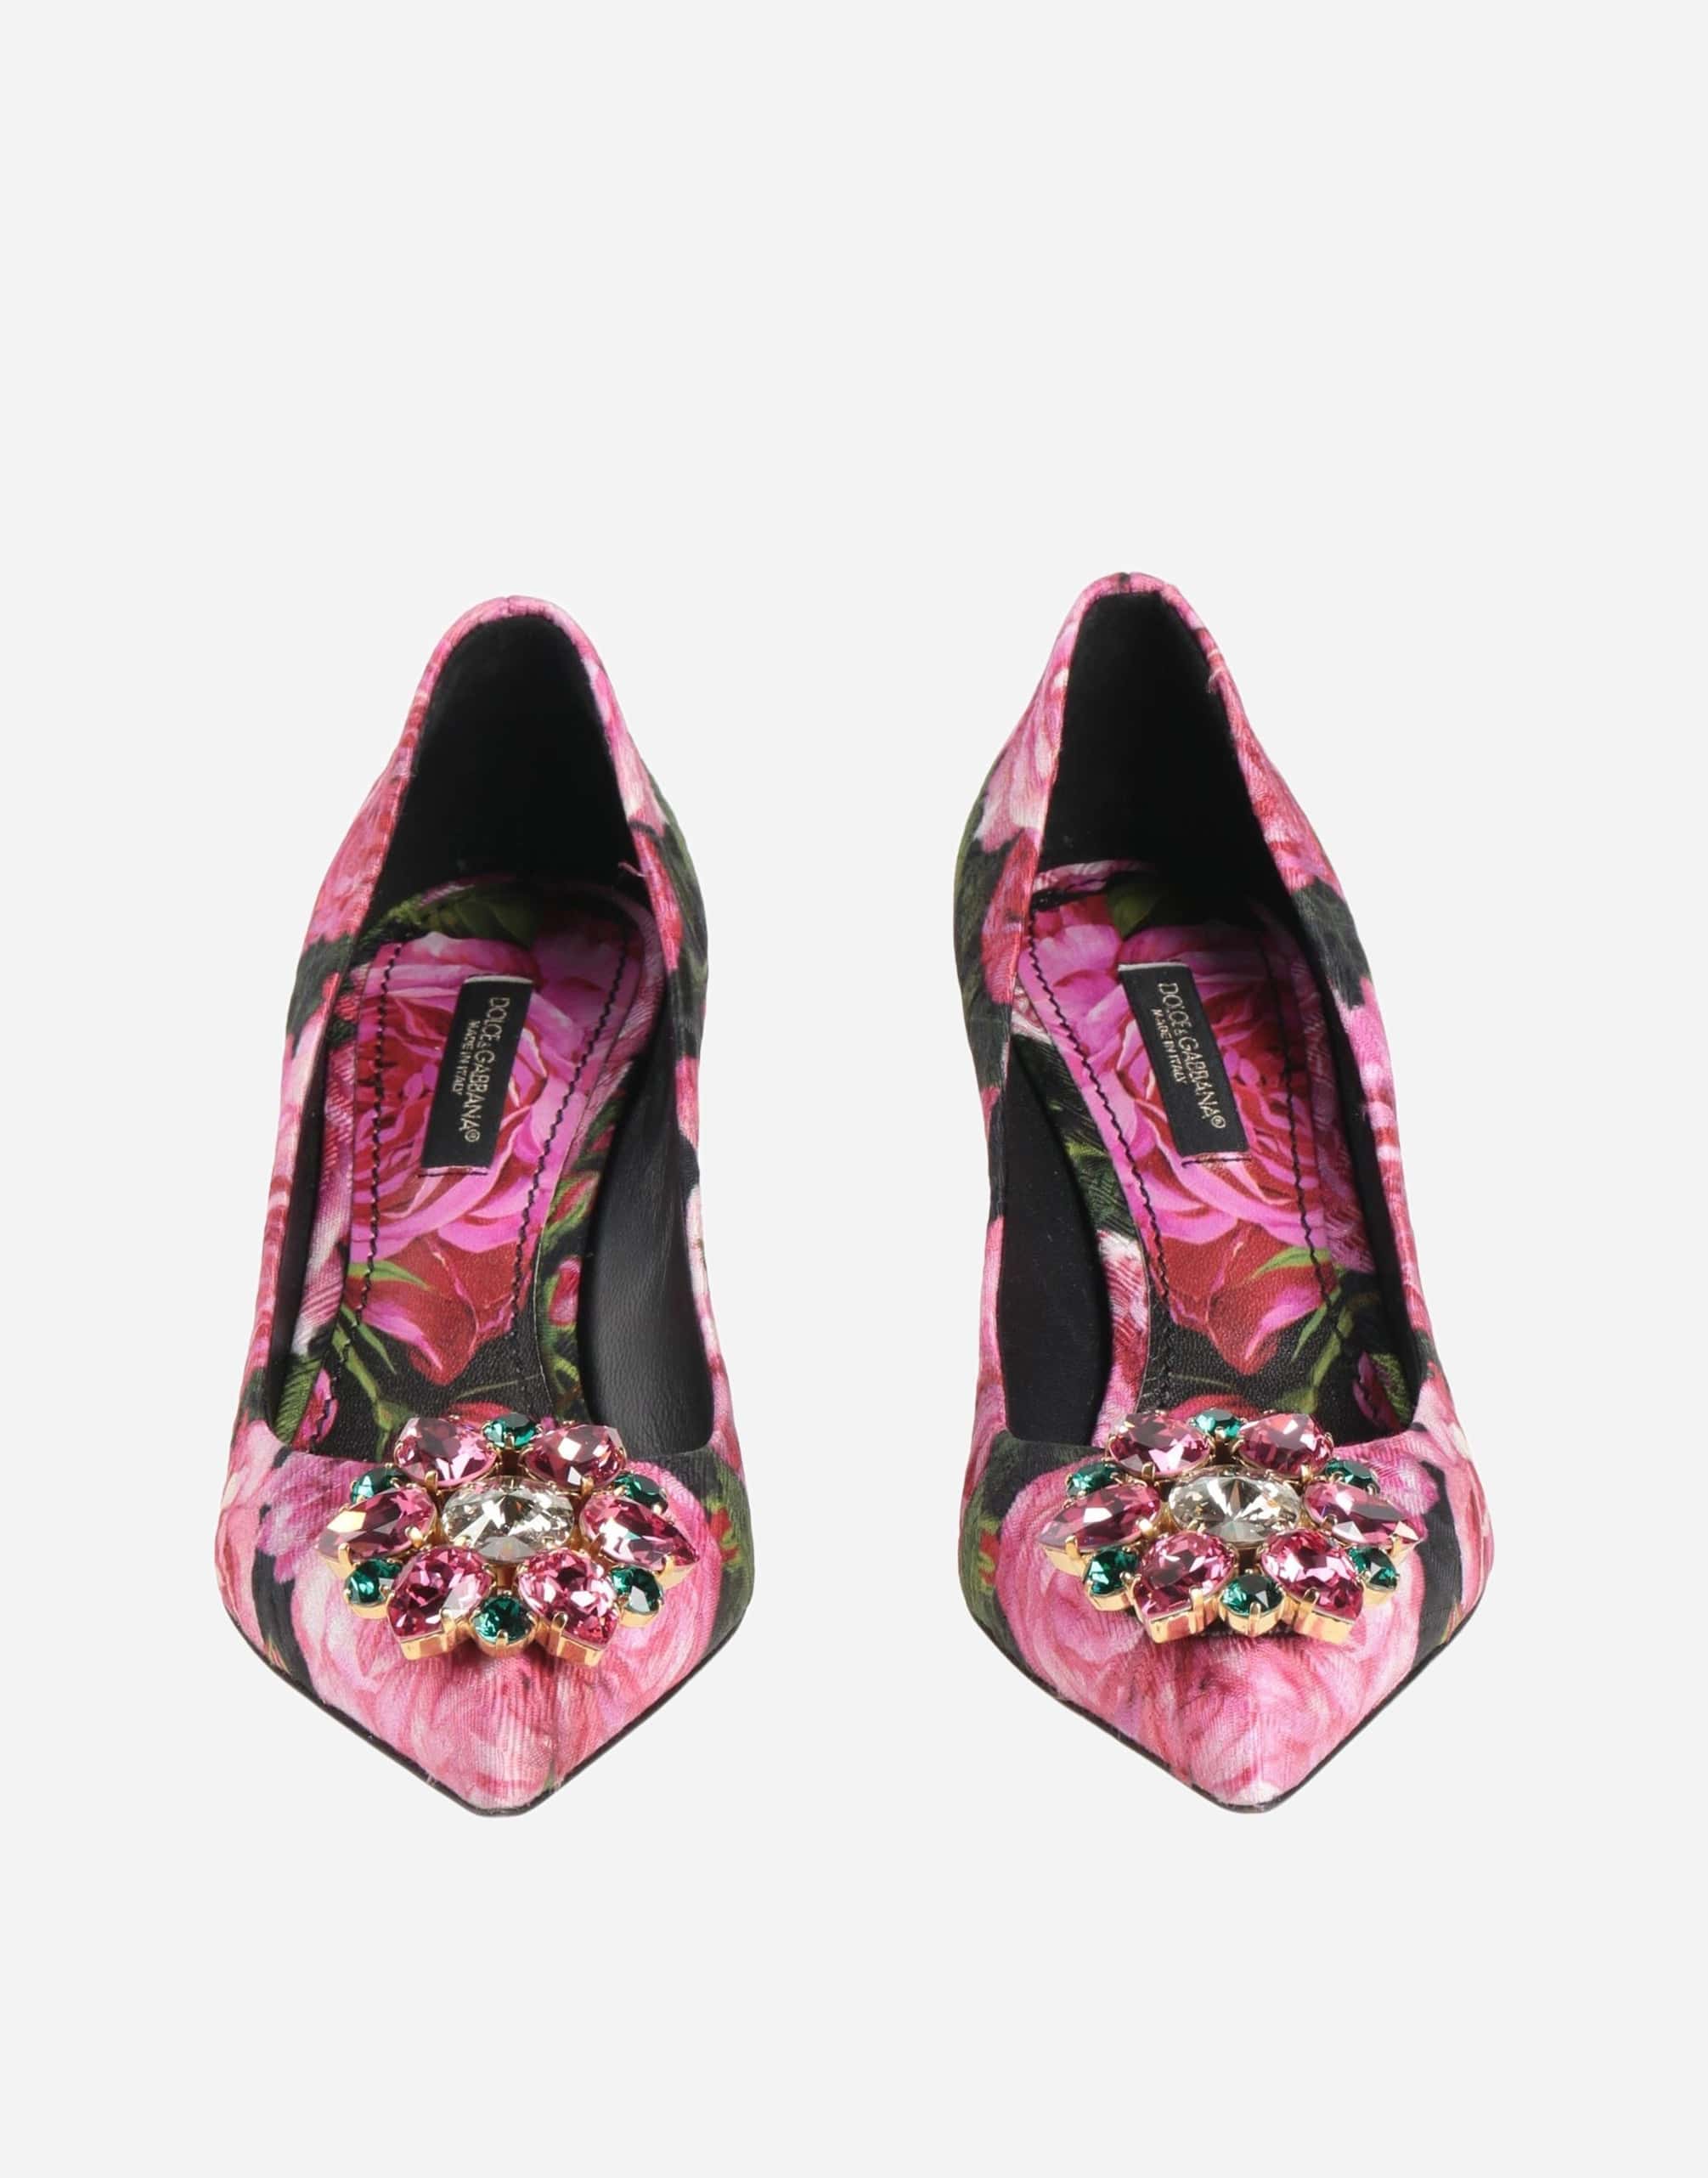 Dolce & Gabbana Crystal-Embellished Rose Brocade Pumps